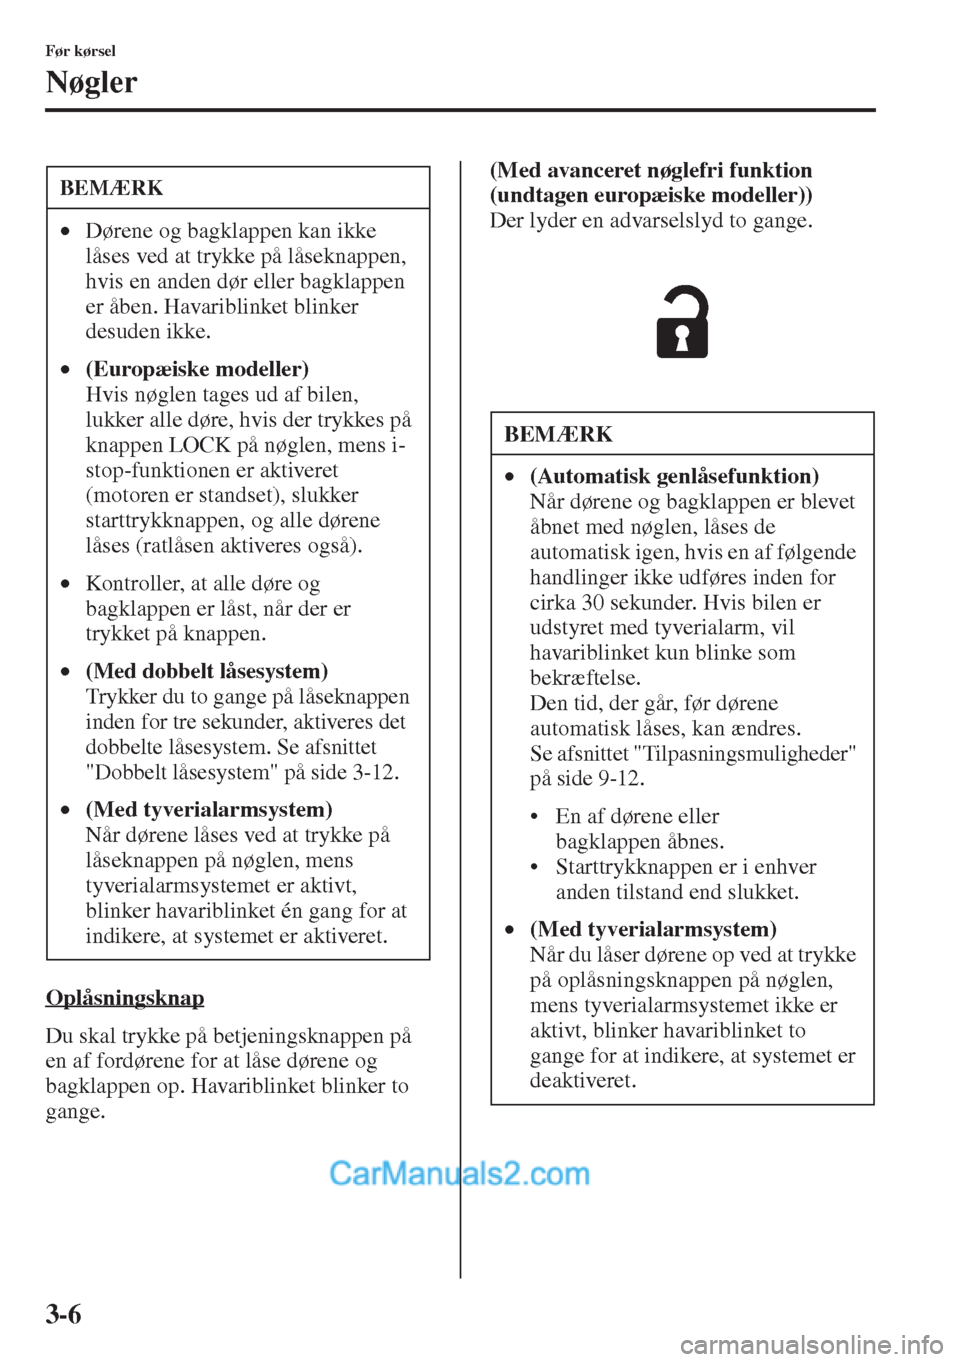 MAZDA MODEL CX-5 2015  Instruktionsbog (in Danish) 3-6
Før kørsel
Nøgler
Oplåsningsknap
Du skal trykke på betjeningsknappen på 
en af fordørene for at låse dørene og 
bagklappen op. Havariblinket blinker to 
gange.(Med avanceret nøglefri fun